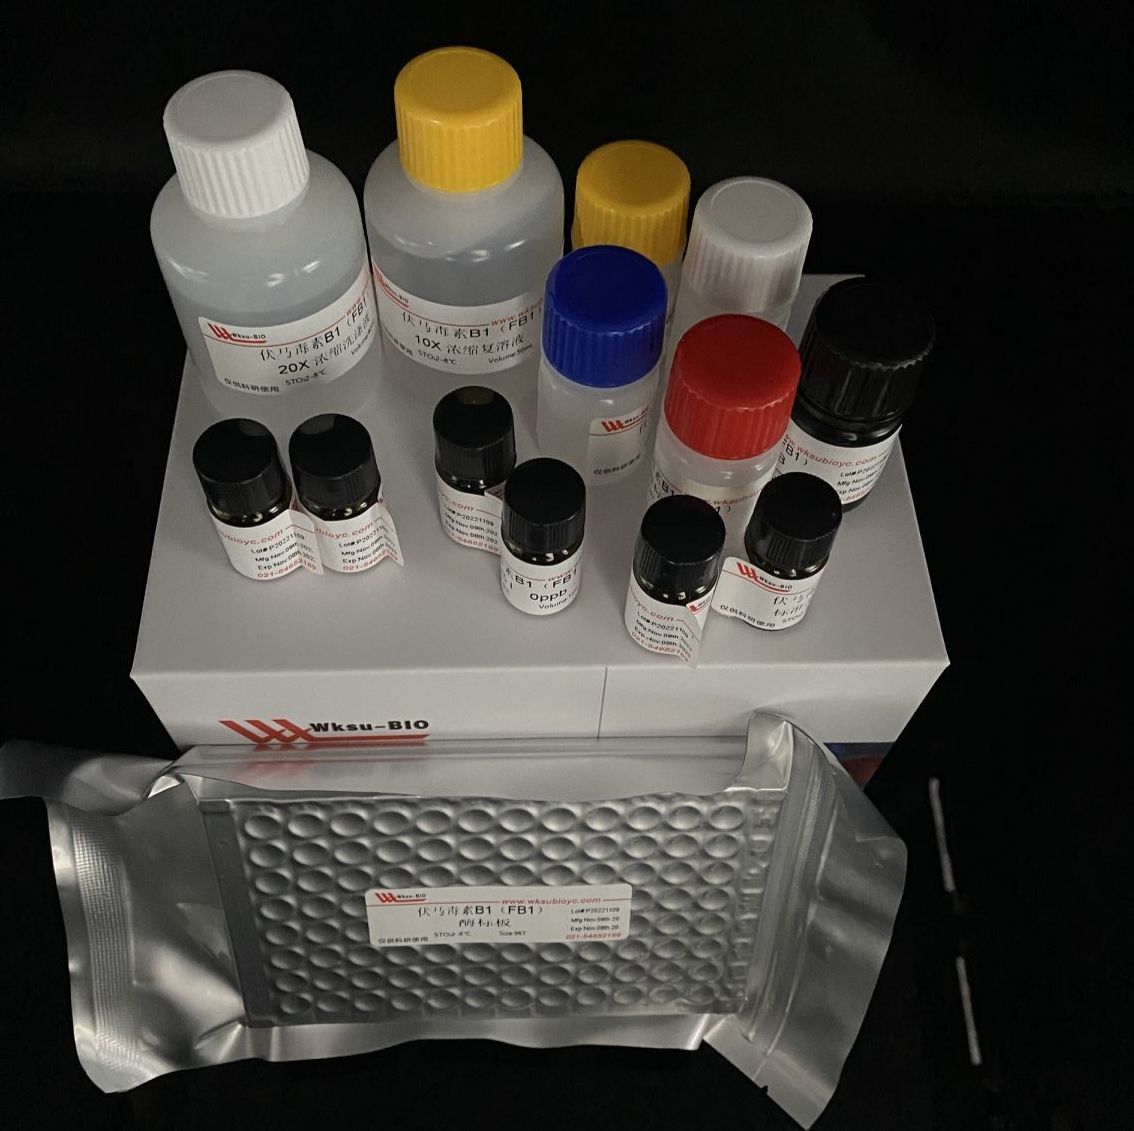 脯氨酸脱氢酶(ProDH)试剂盒,微板法